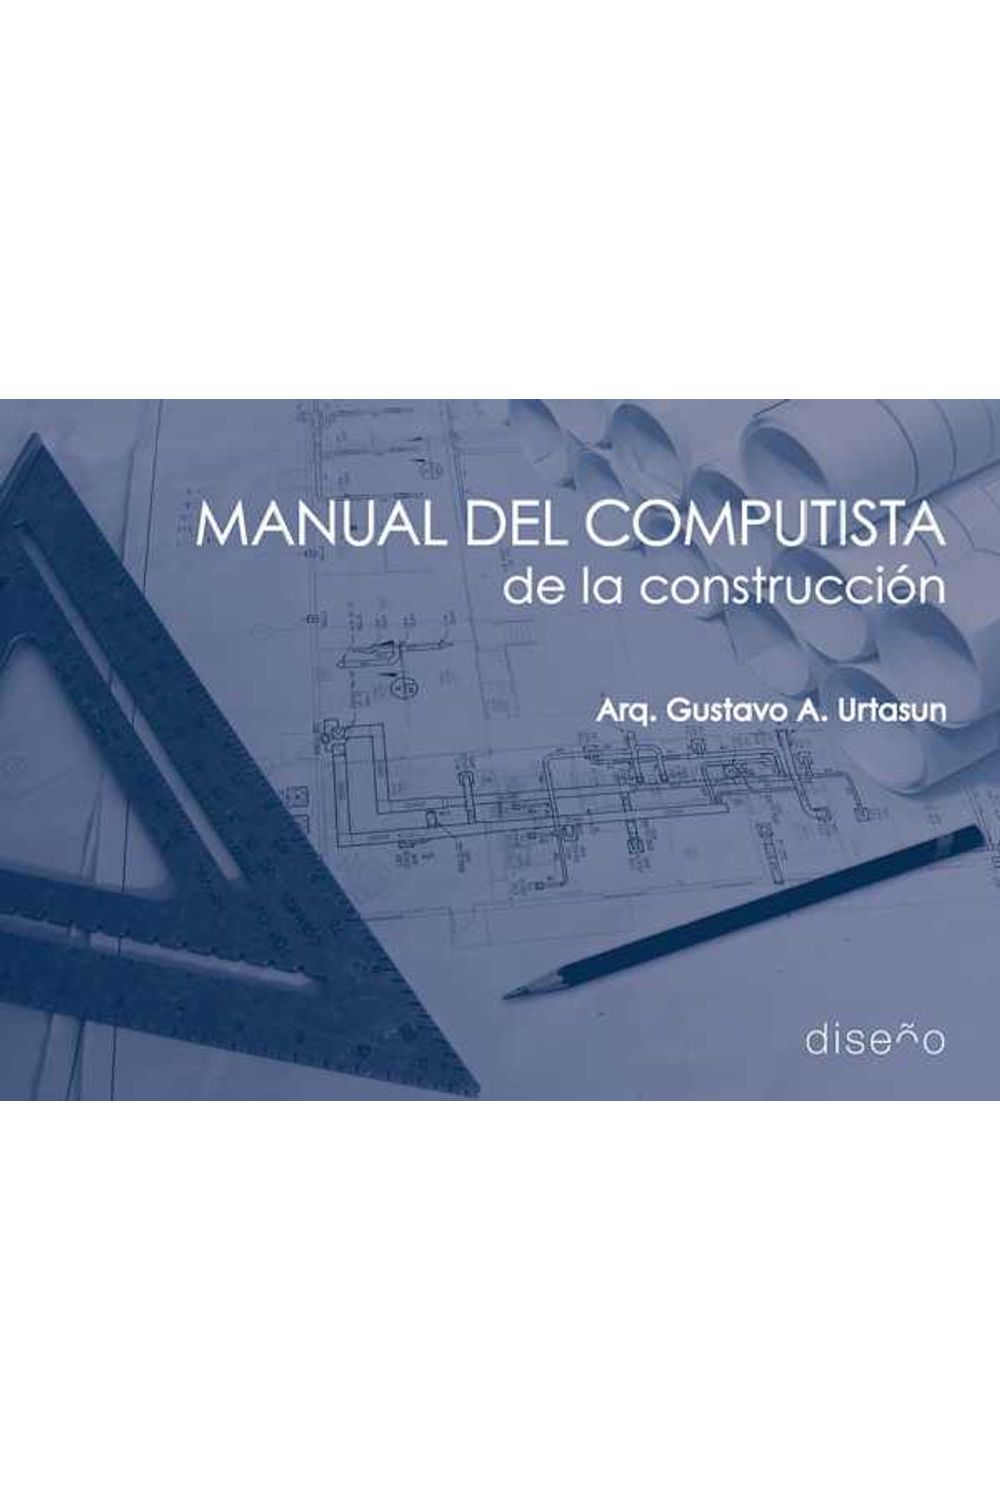 bm-manual-del-computista-de-la-construccion-nobukodiseno-editorial-9781643602943